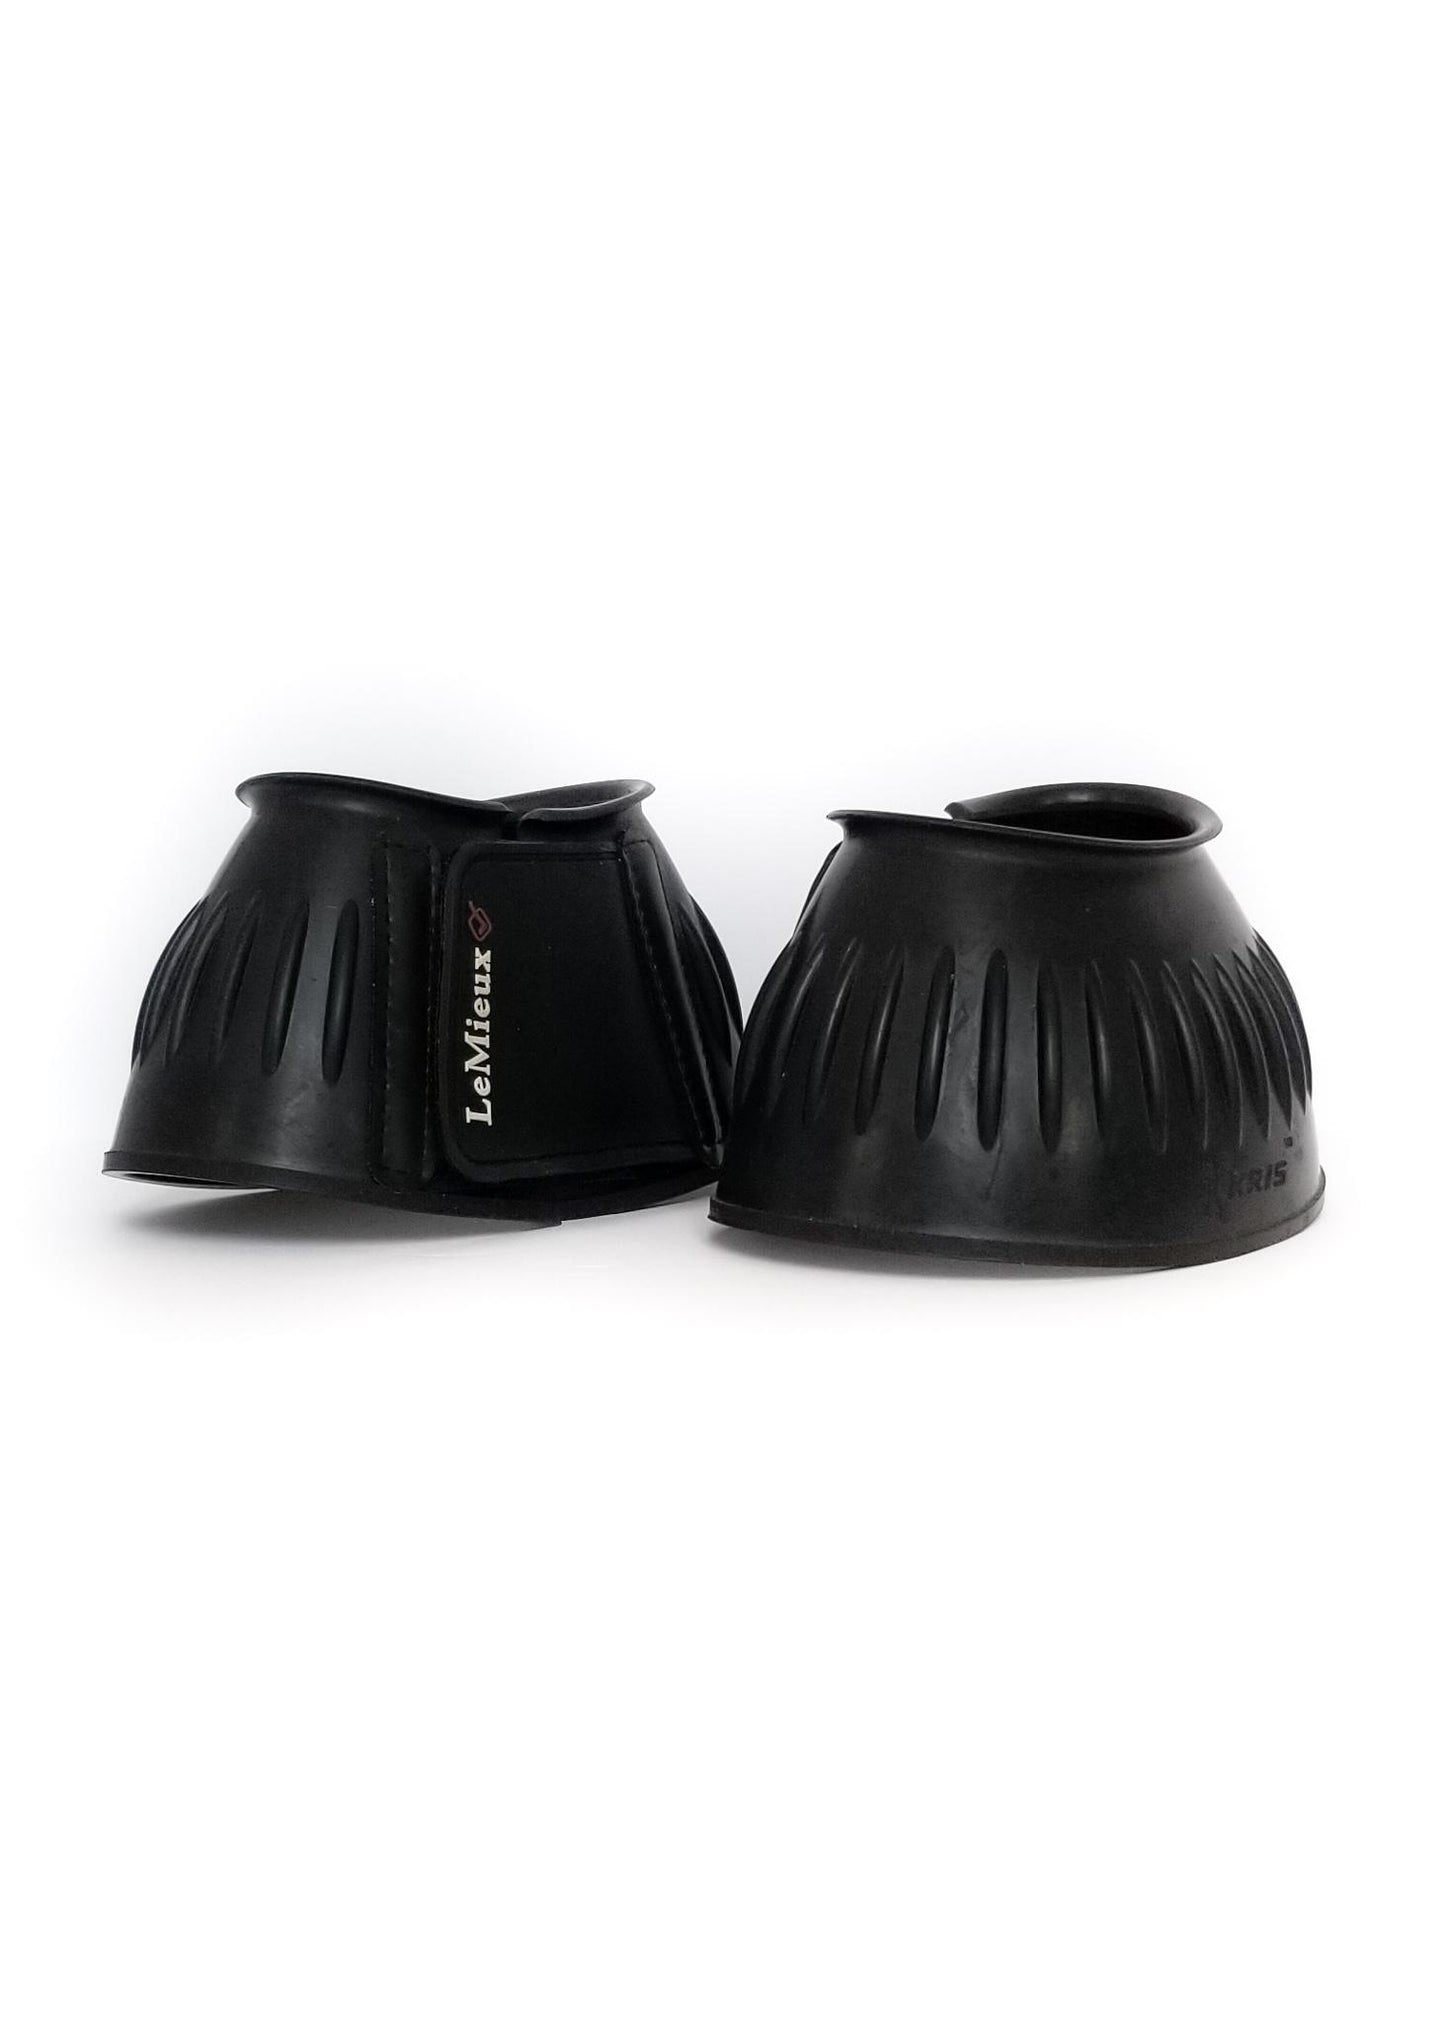 LeMieux Rubber Bell Boots - Black - Large